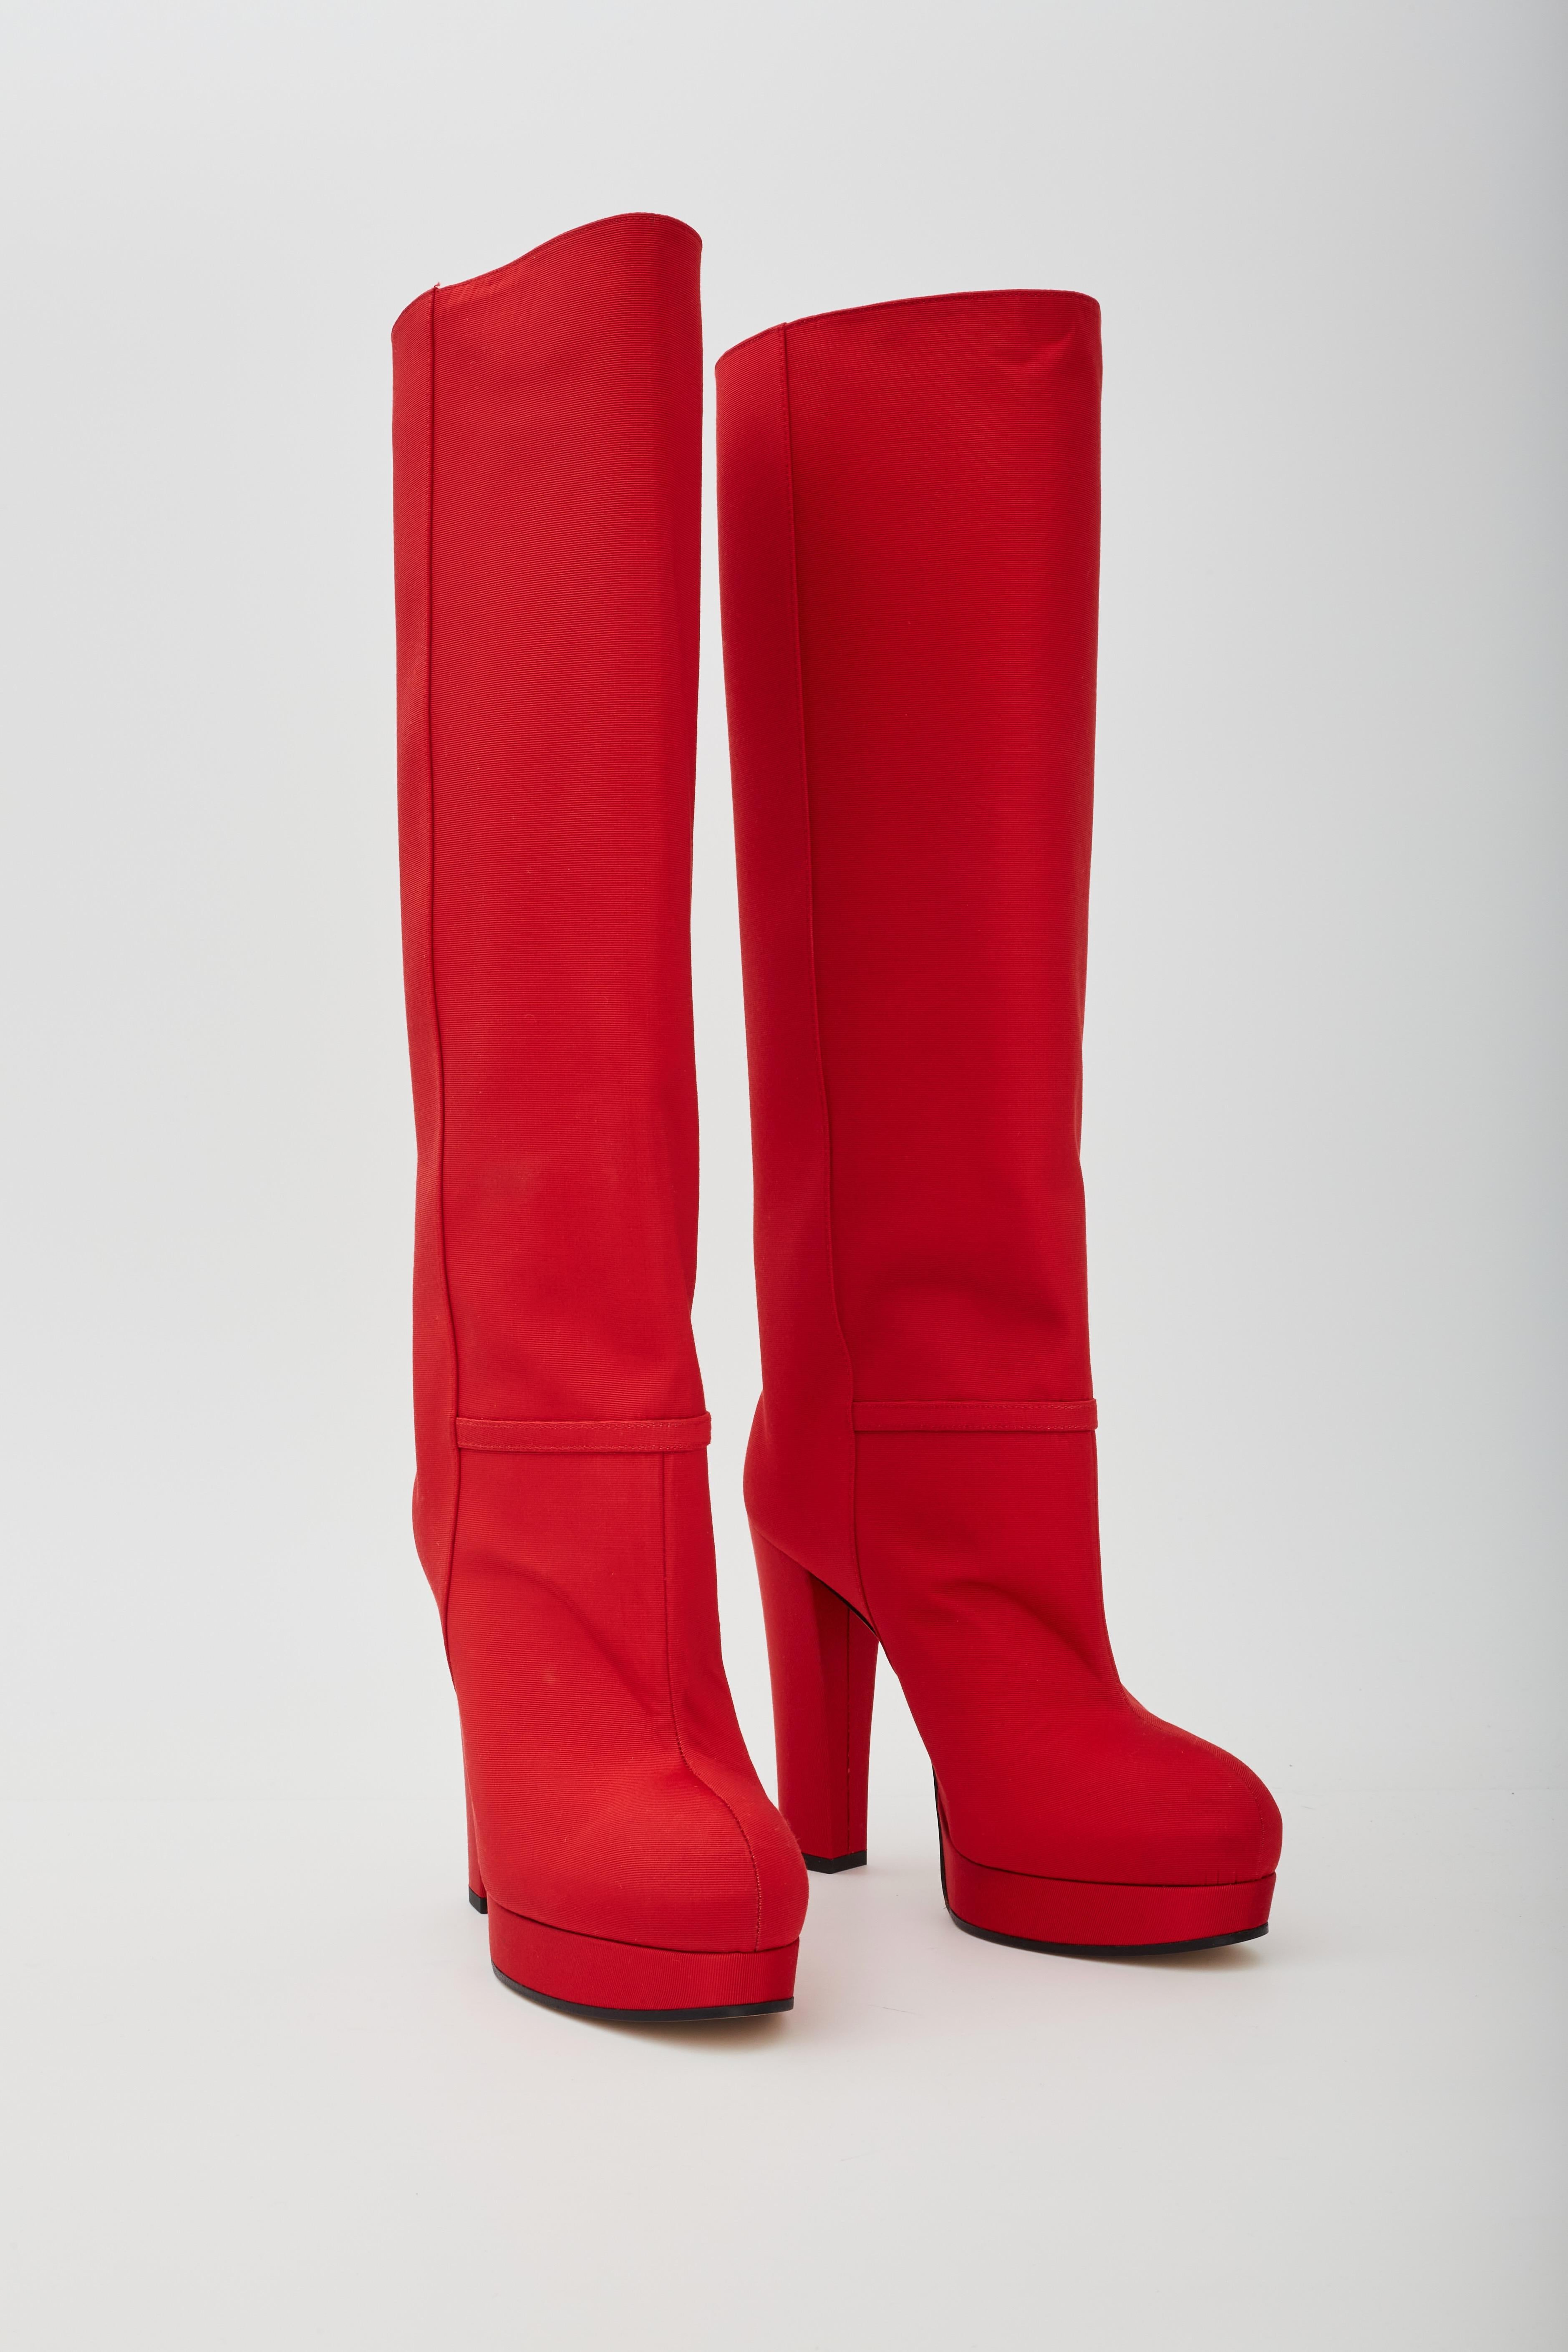 Rouge Gucci - Bottes à plateforme hauteur genou en tissu rouge côtelé (588968) 38,5 EU en vente